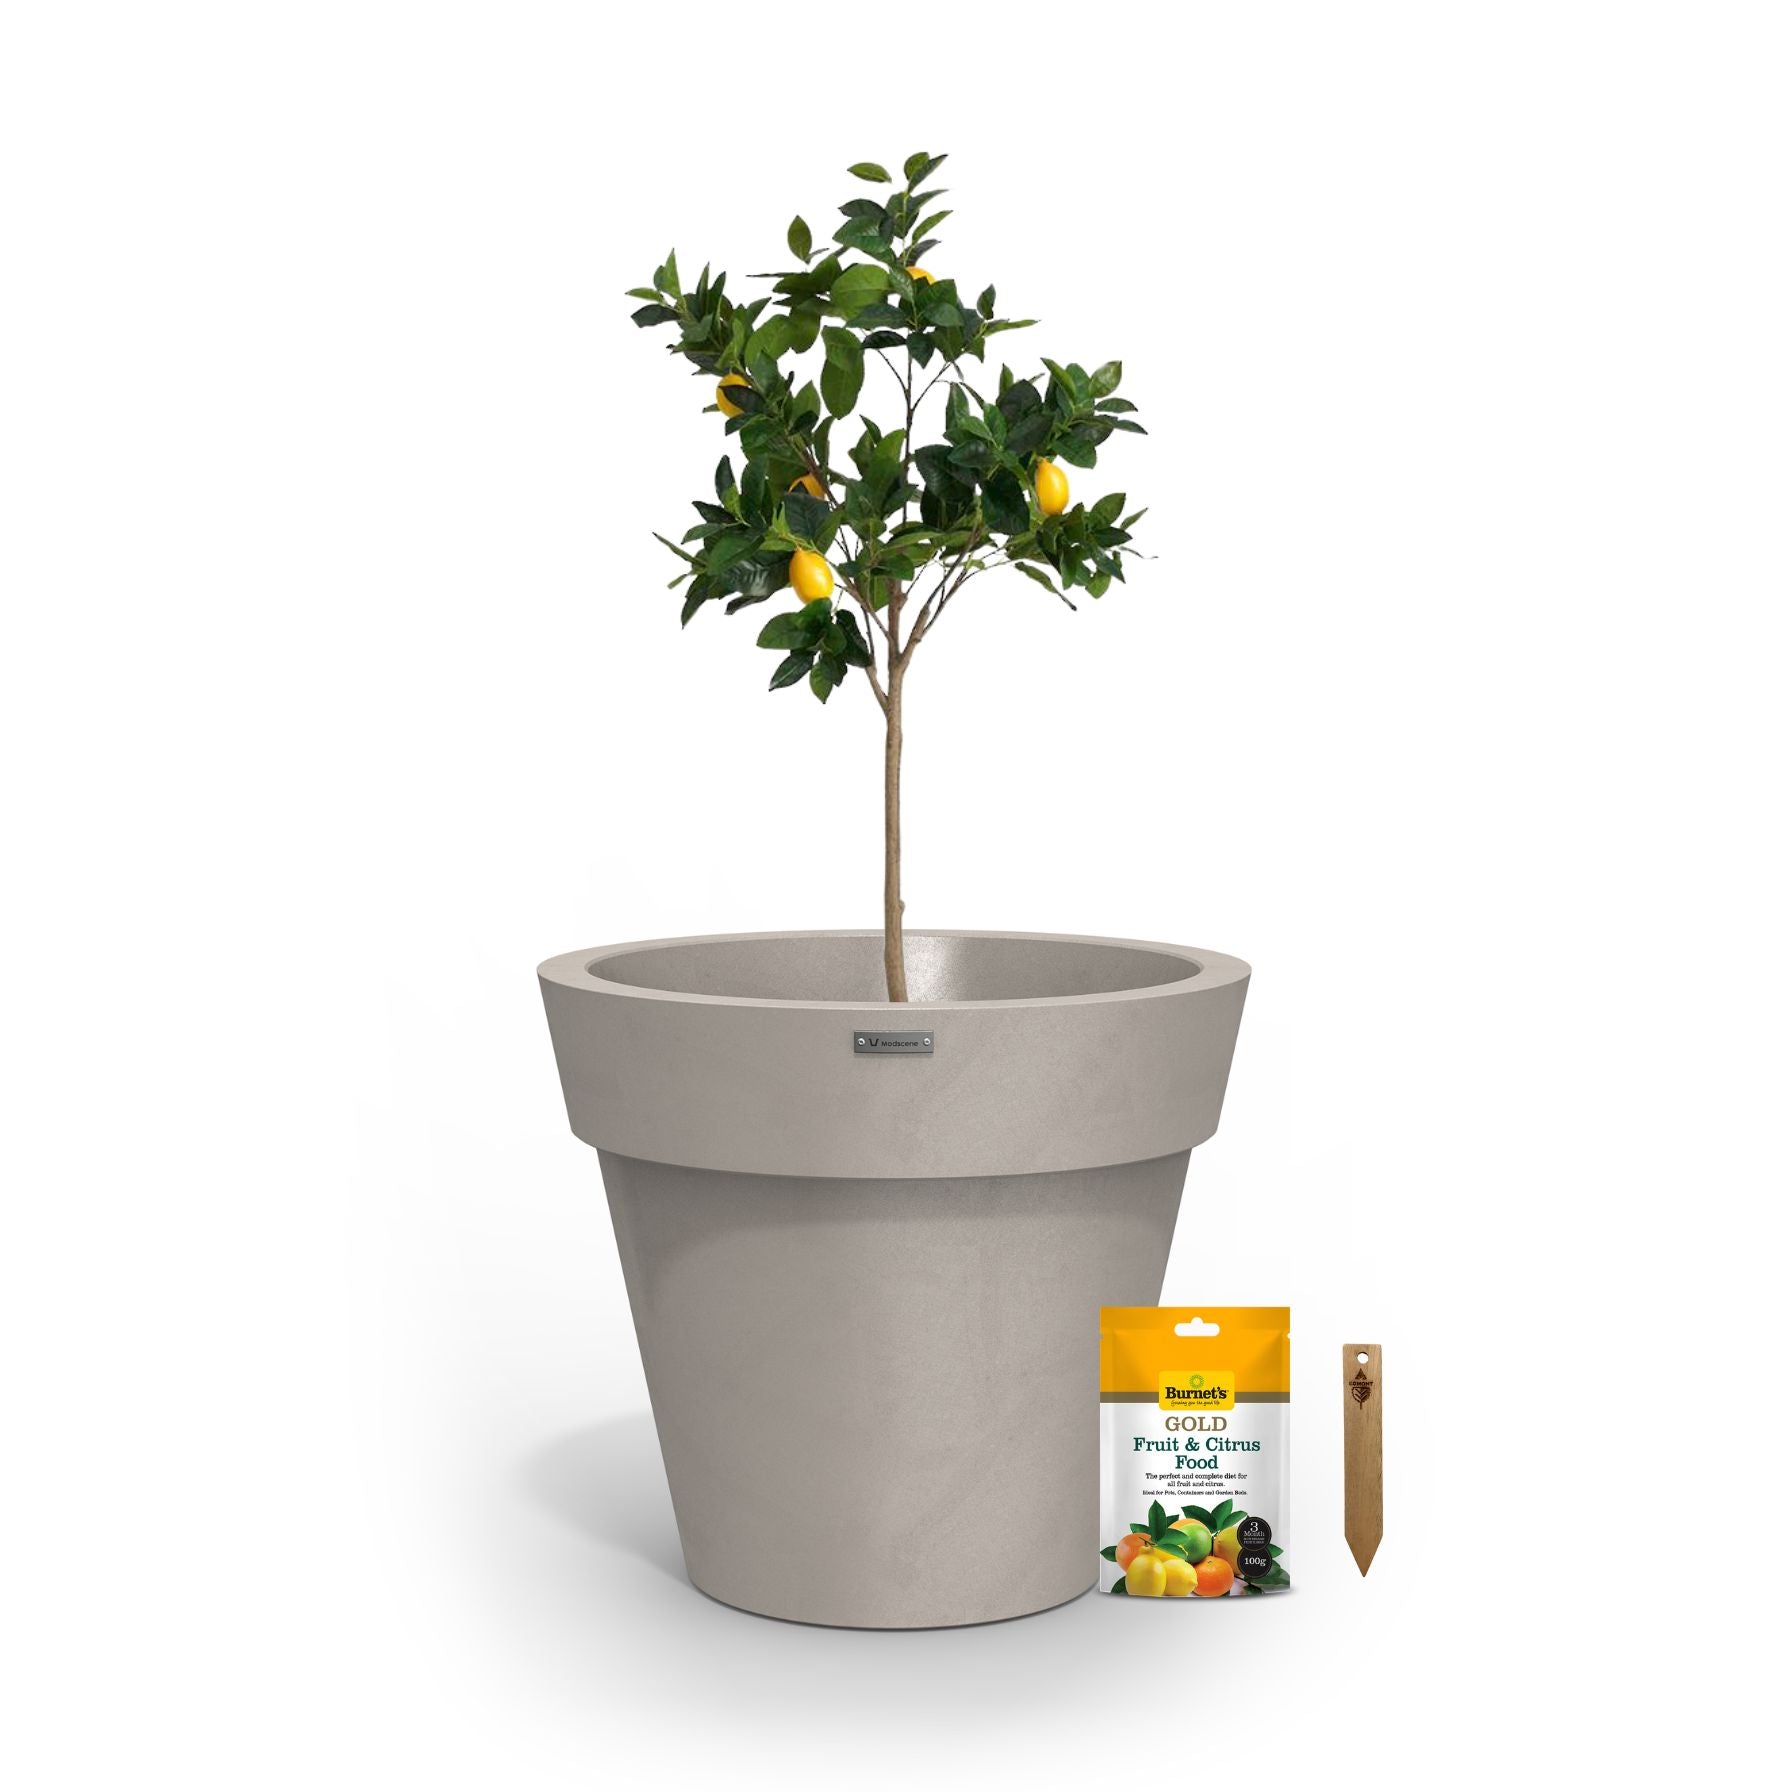 A lemon tree in a soft brown planter pot.